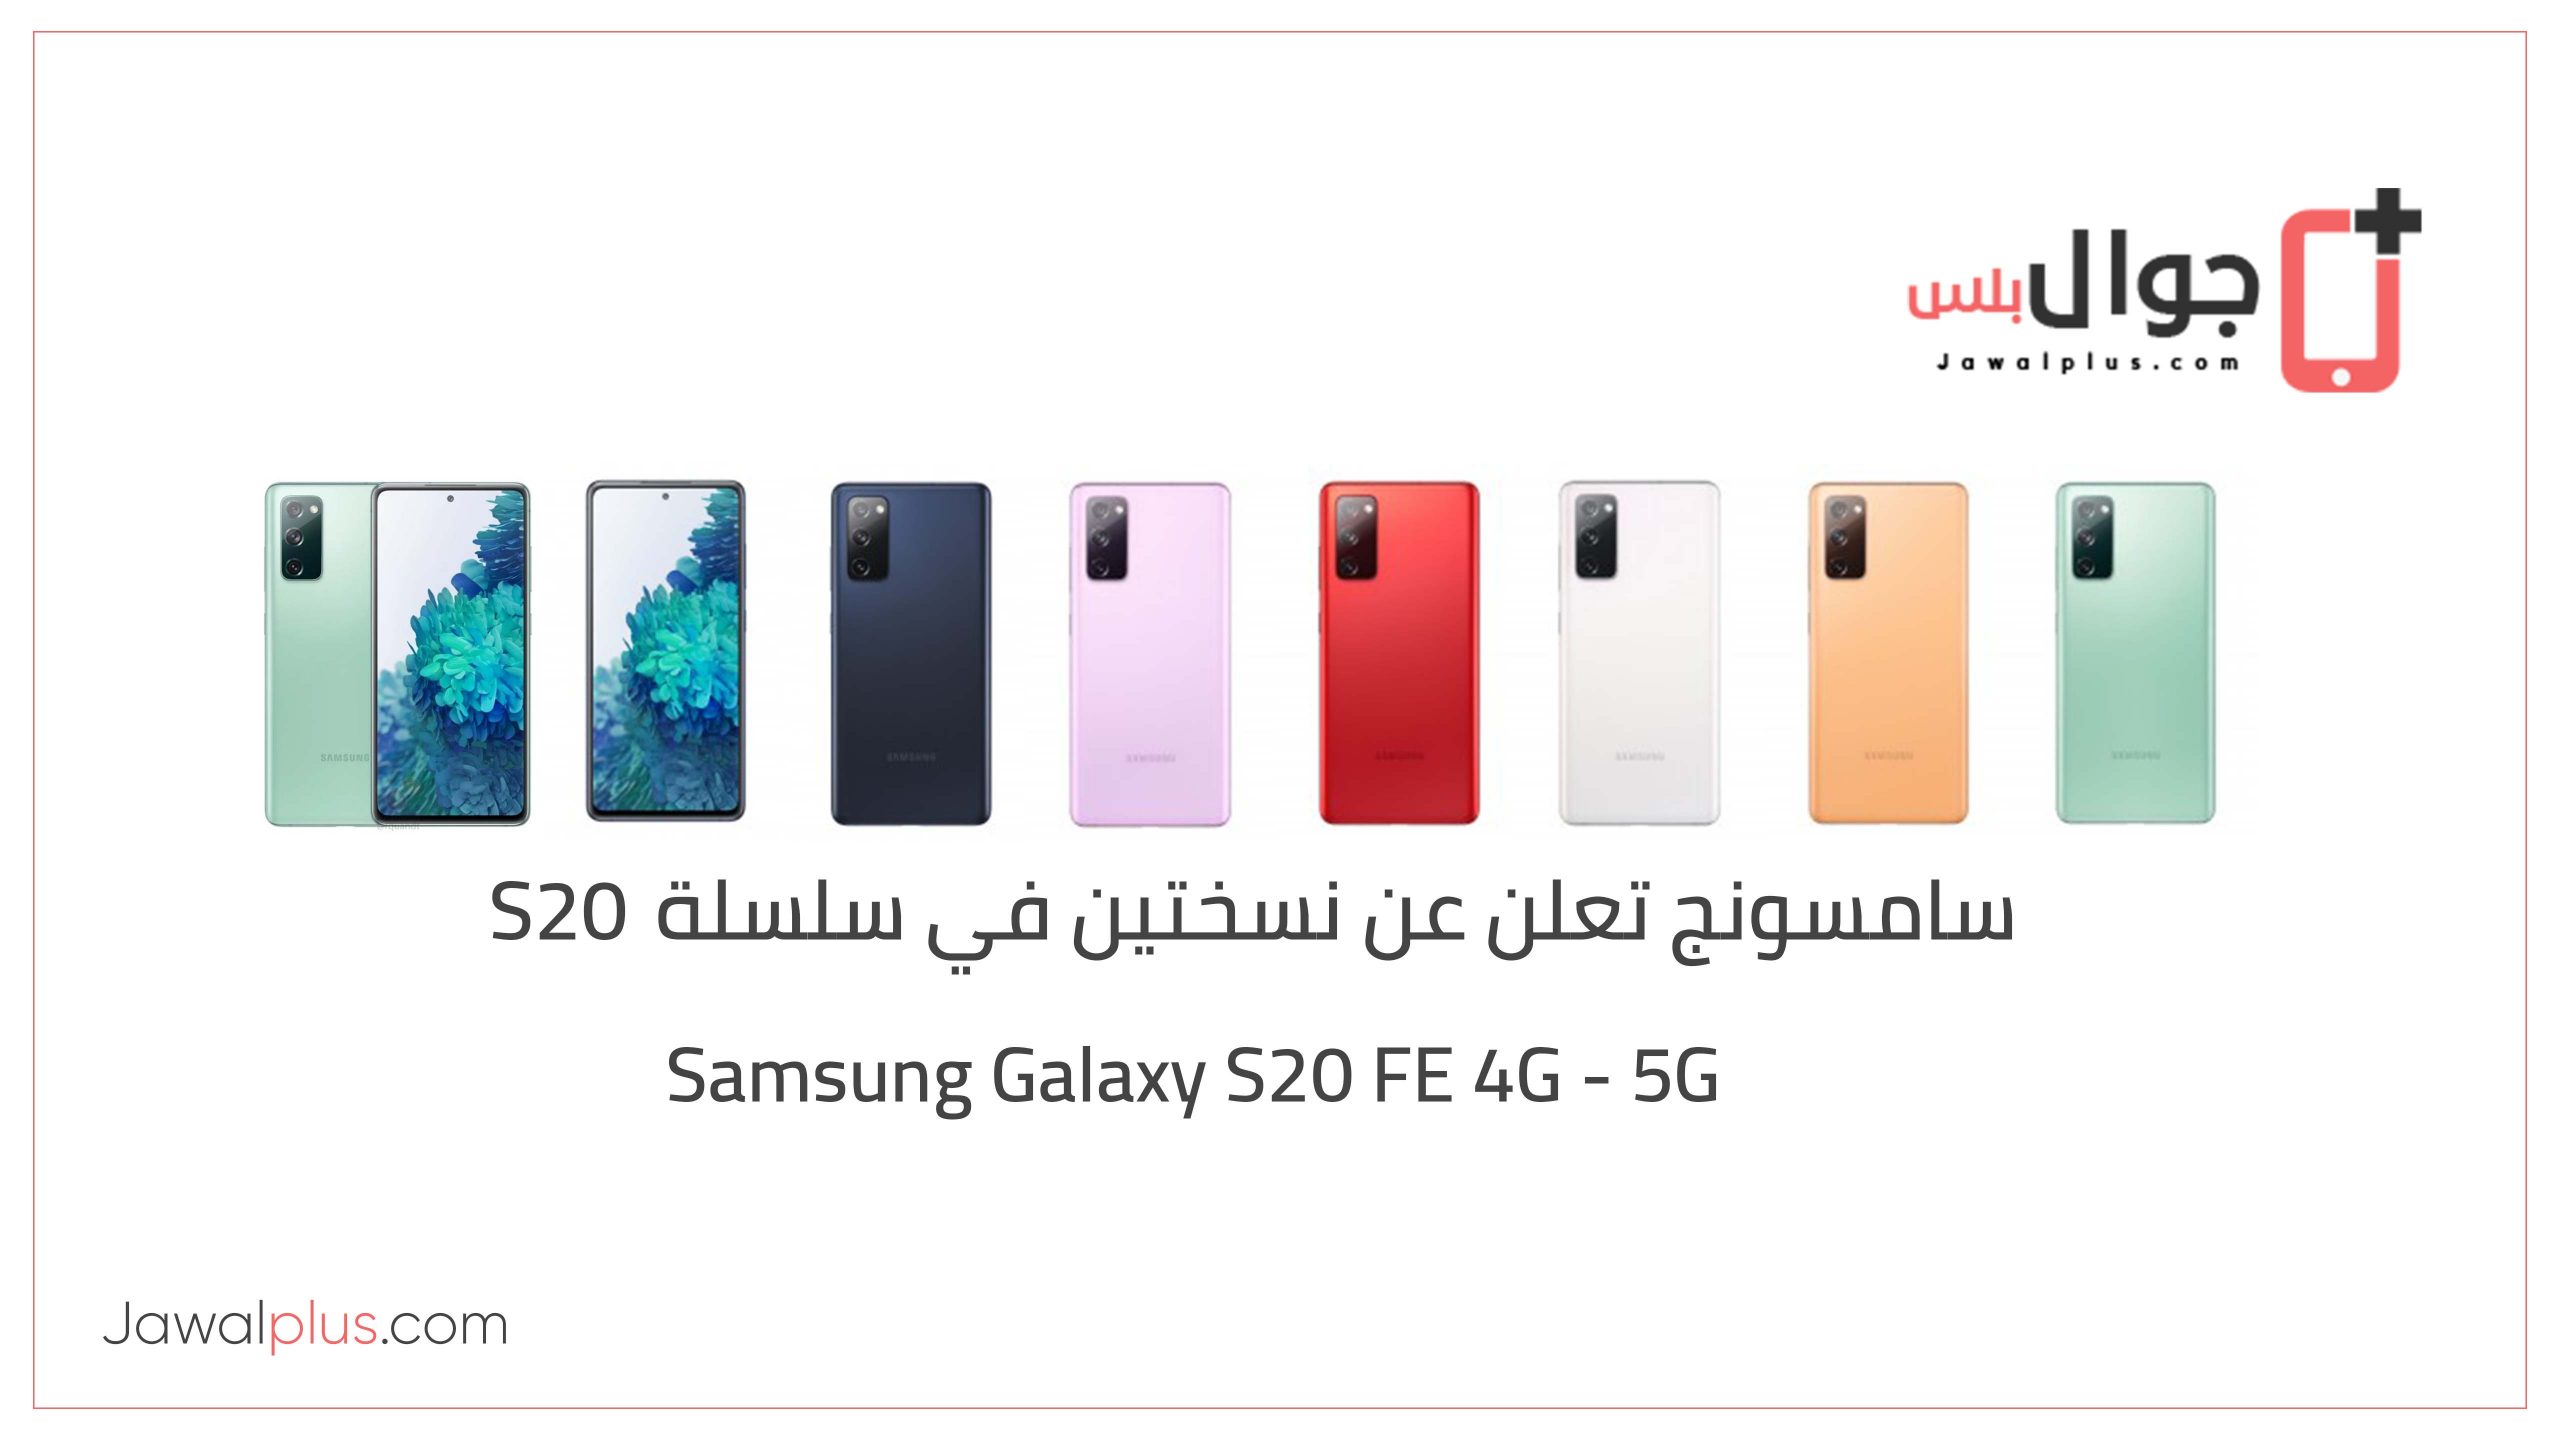 Samsung Galaxy S20 FE 4G - 5G